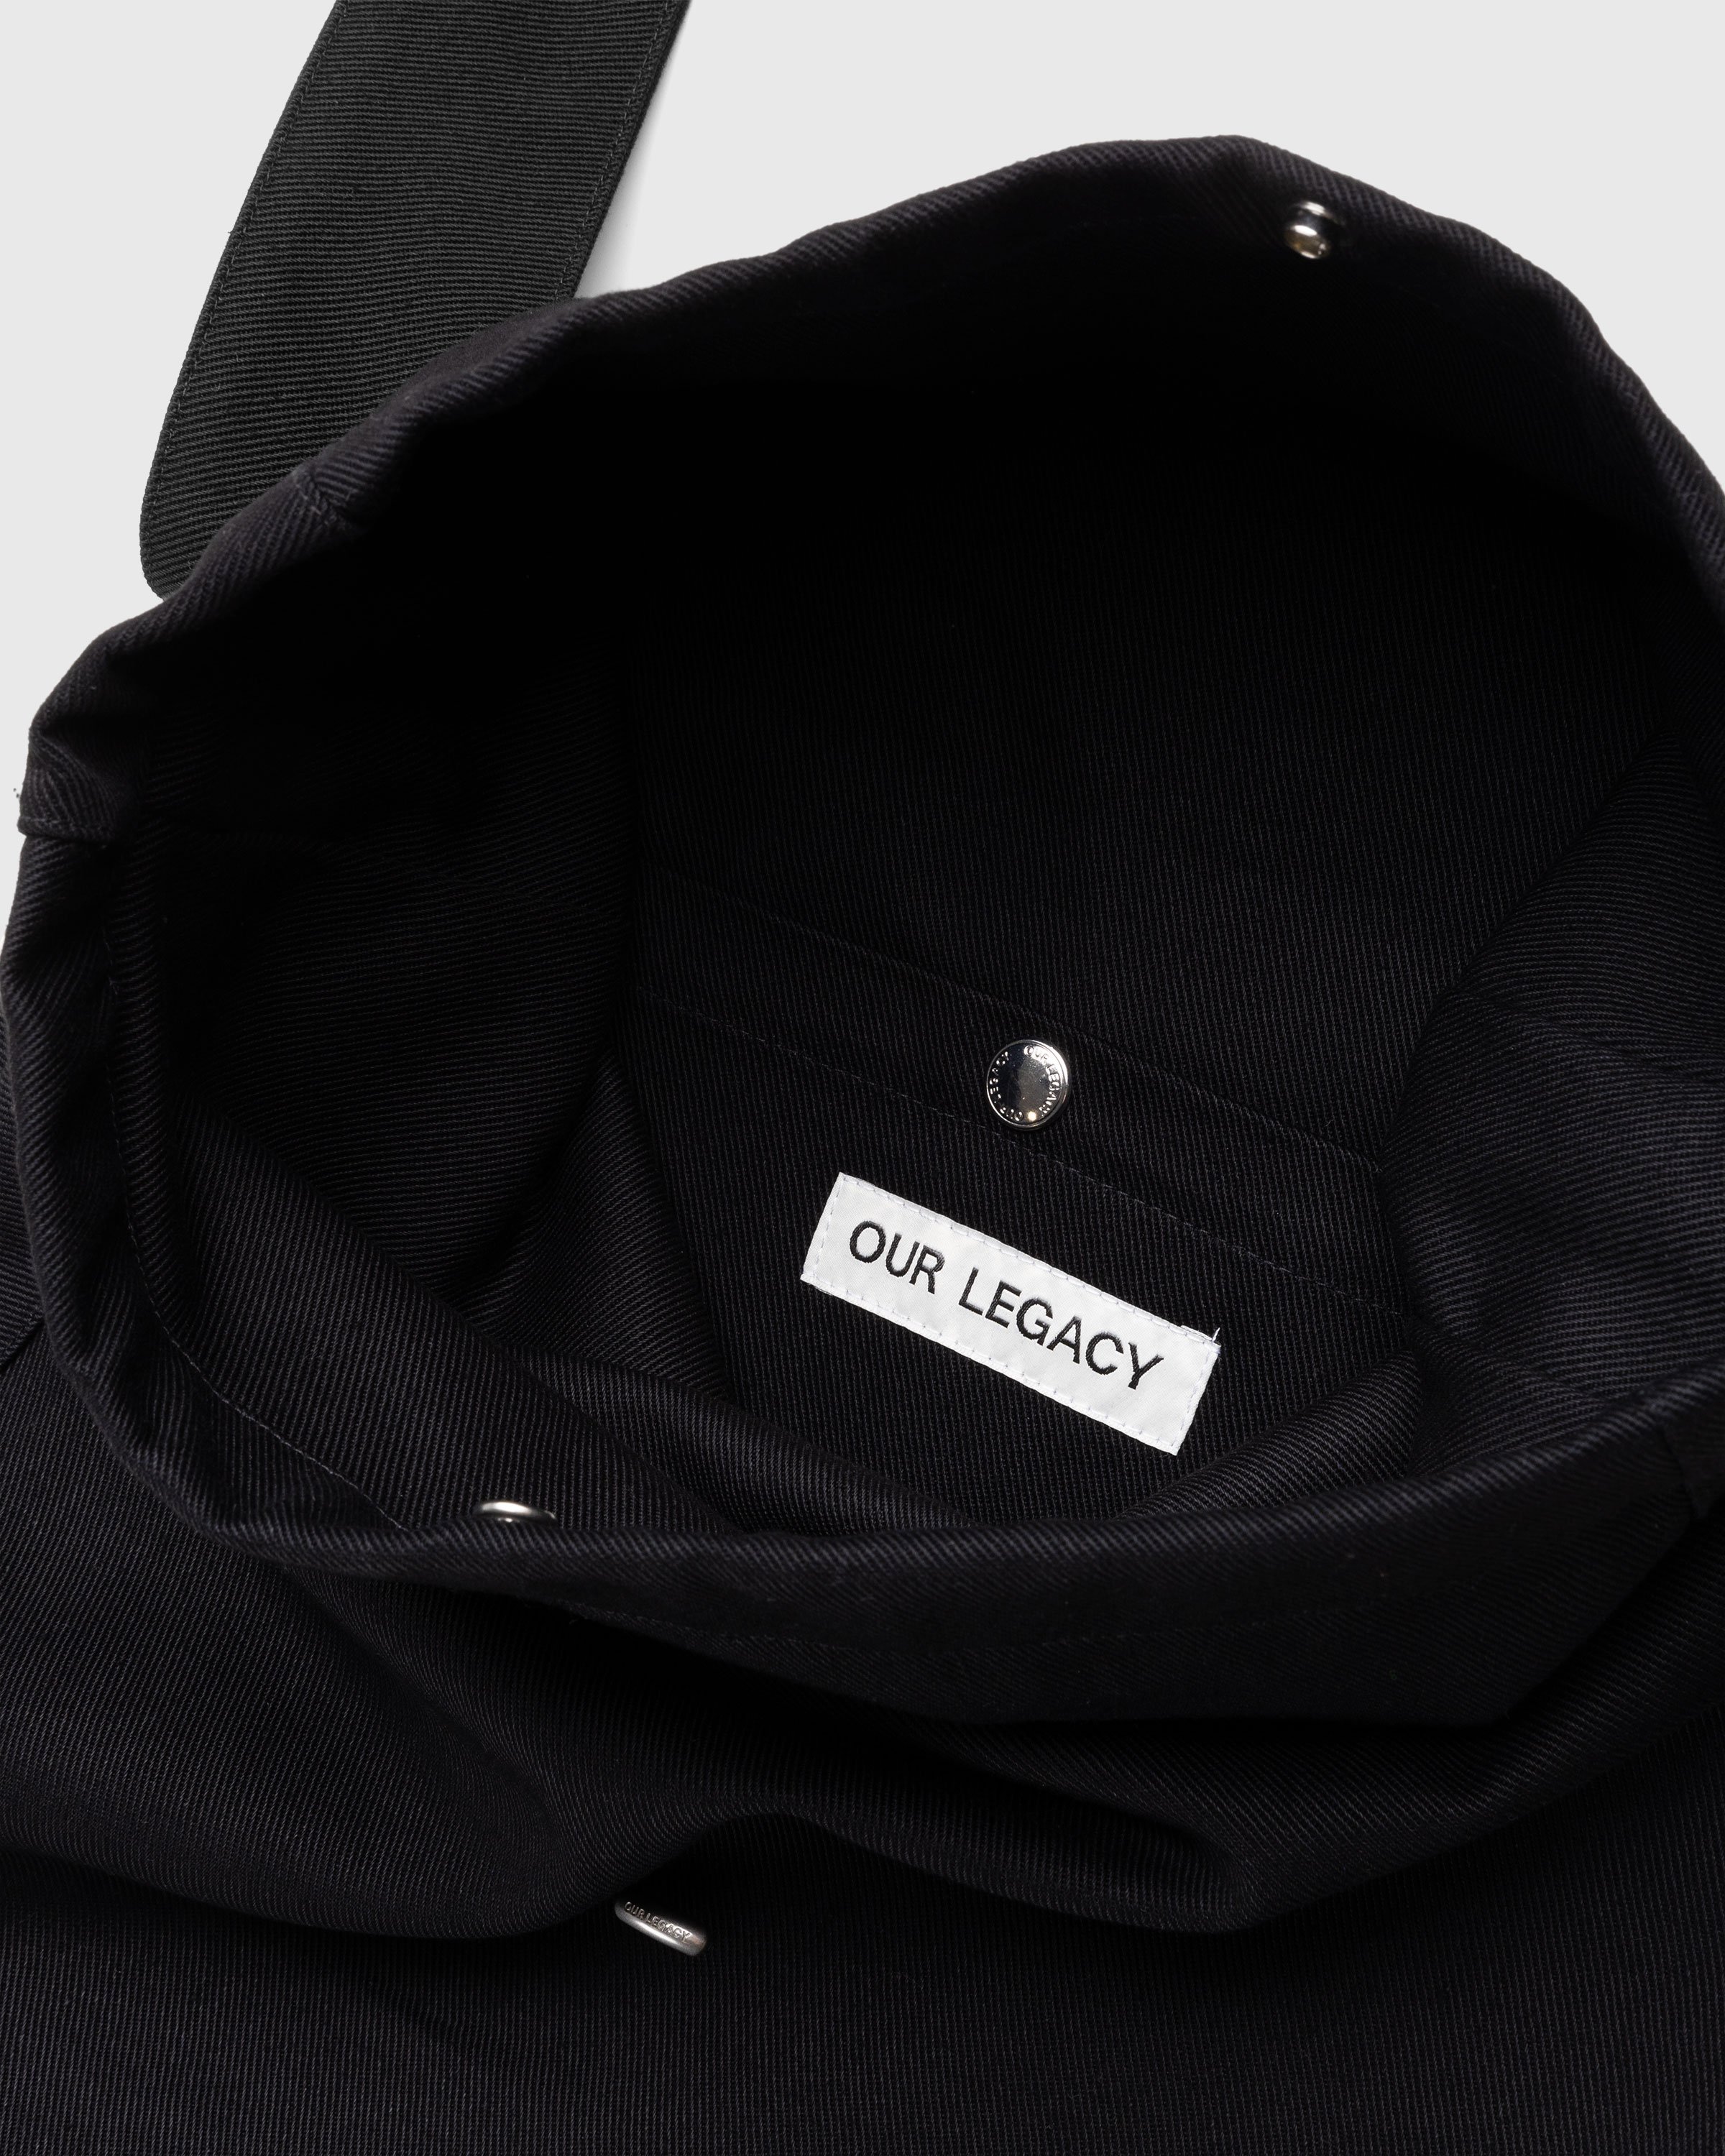 Our Legacy - Sling Bag Washed Black Denim - Accessories - Black - Image 3